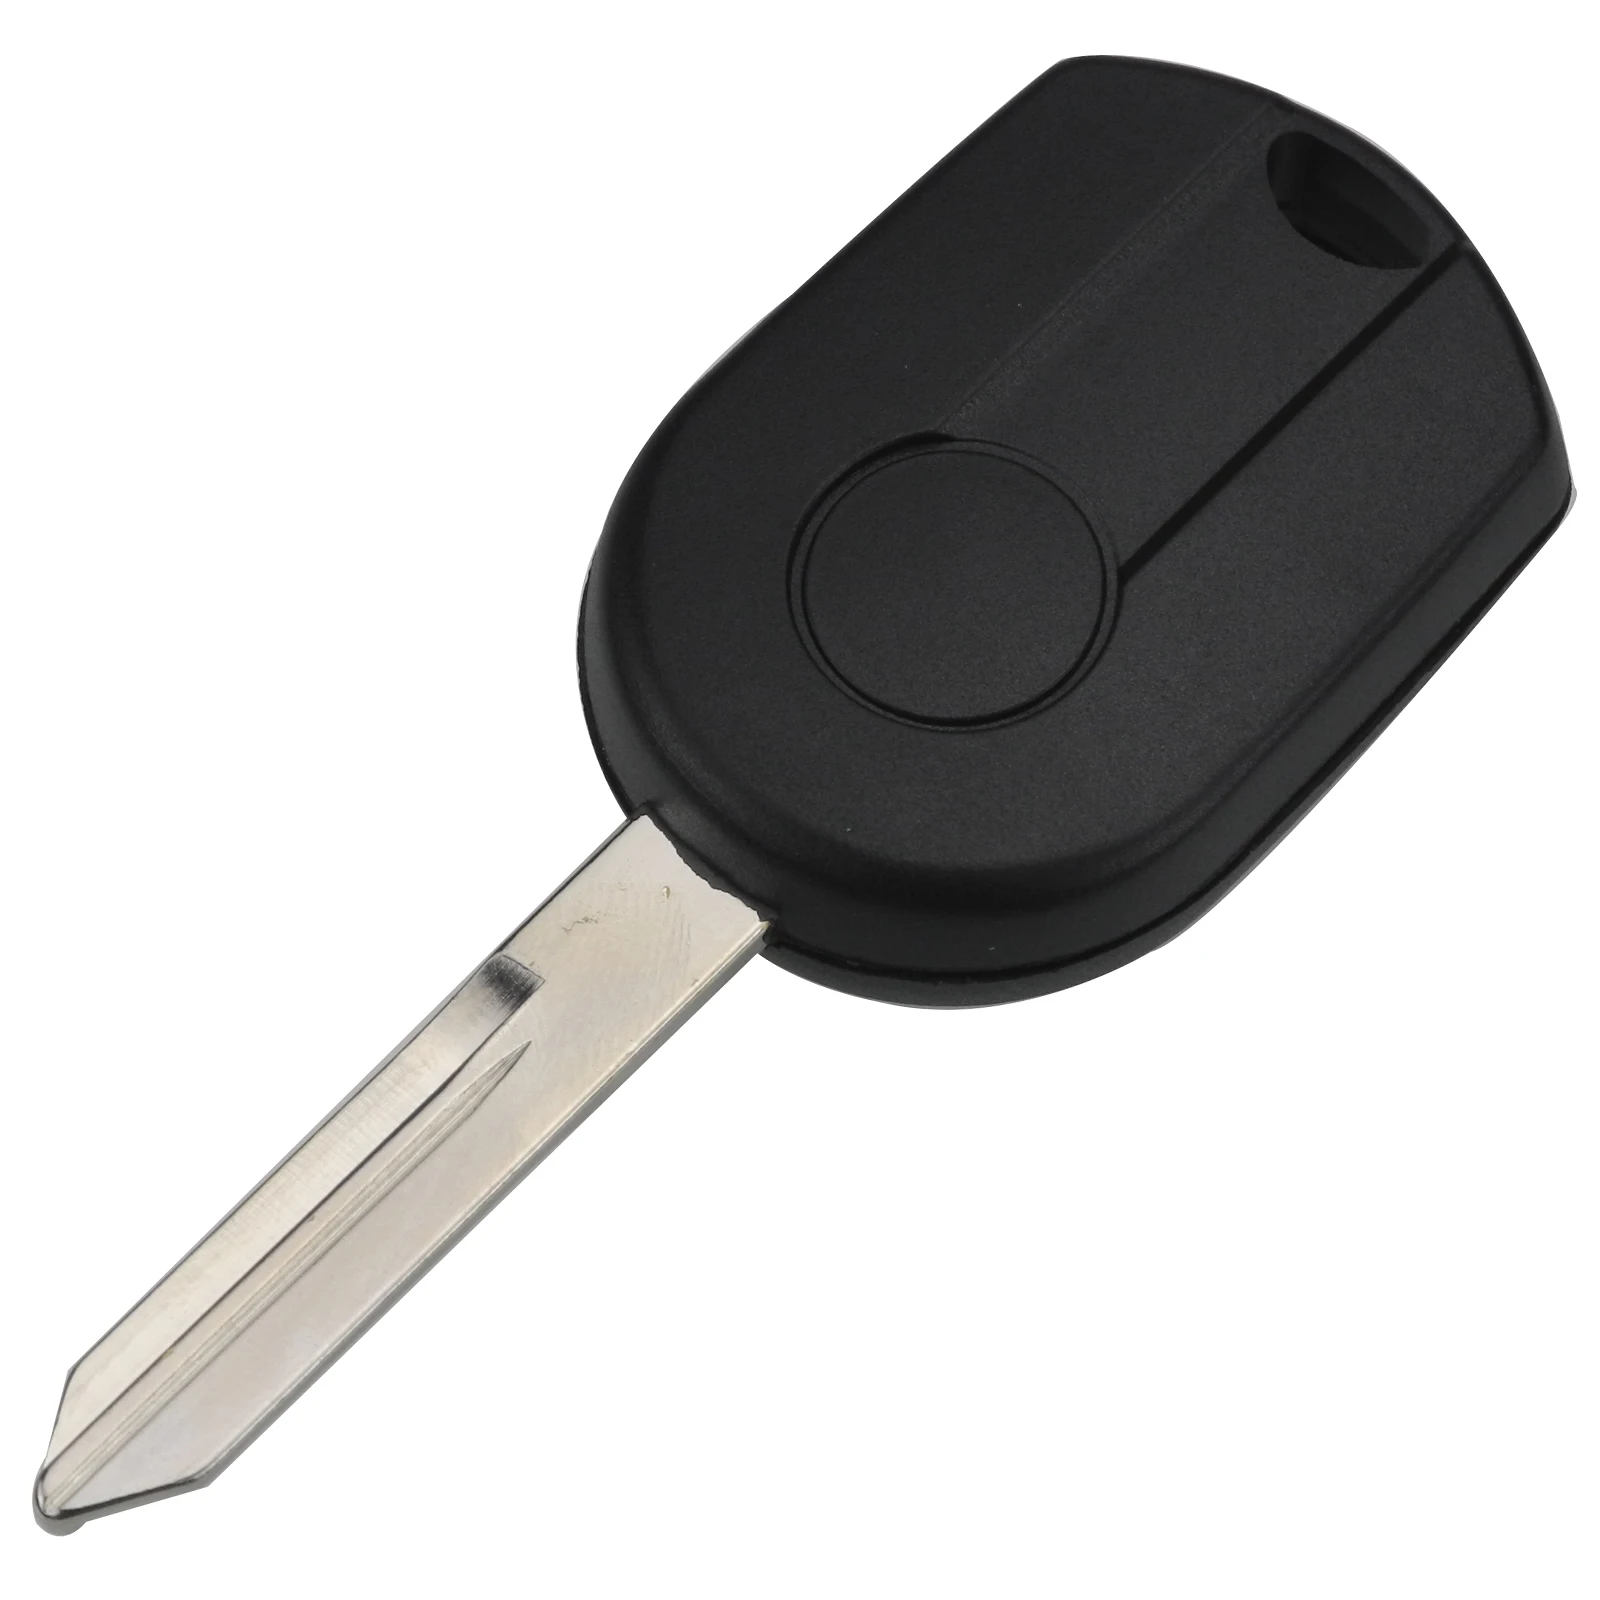 Jingyuqin 4 кнопки в комплекте автомобильный ключ дистанционного управления для Ford Escape Keyless Shell Entry комбинированный Брелок дистанционного управления OUCD6000022 с ID63 чип 80